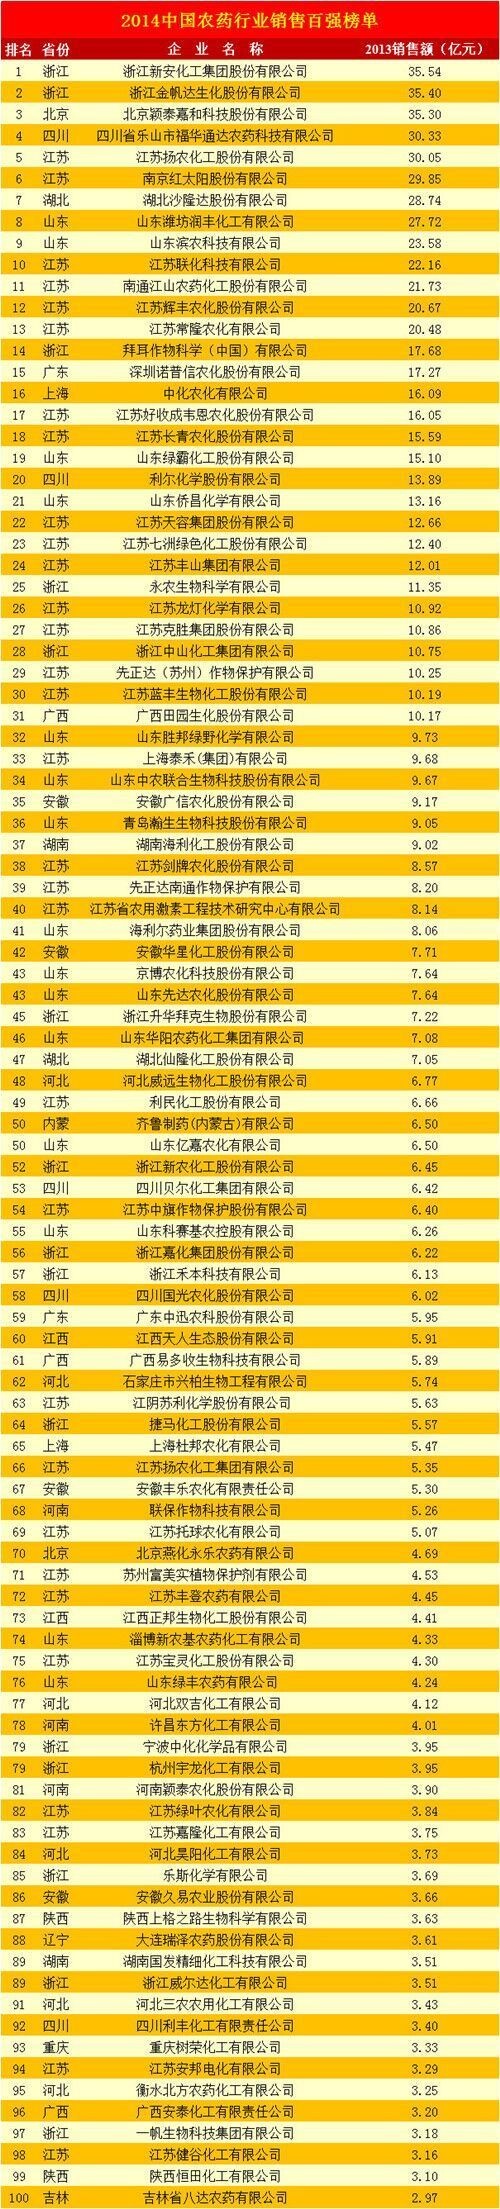 中国农药销售排行榜：超过30亿元的企业达到5家